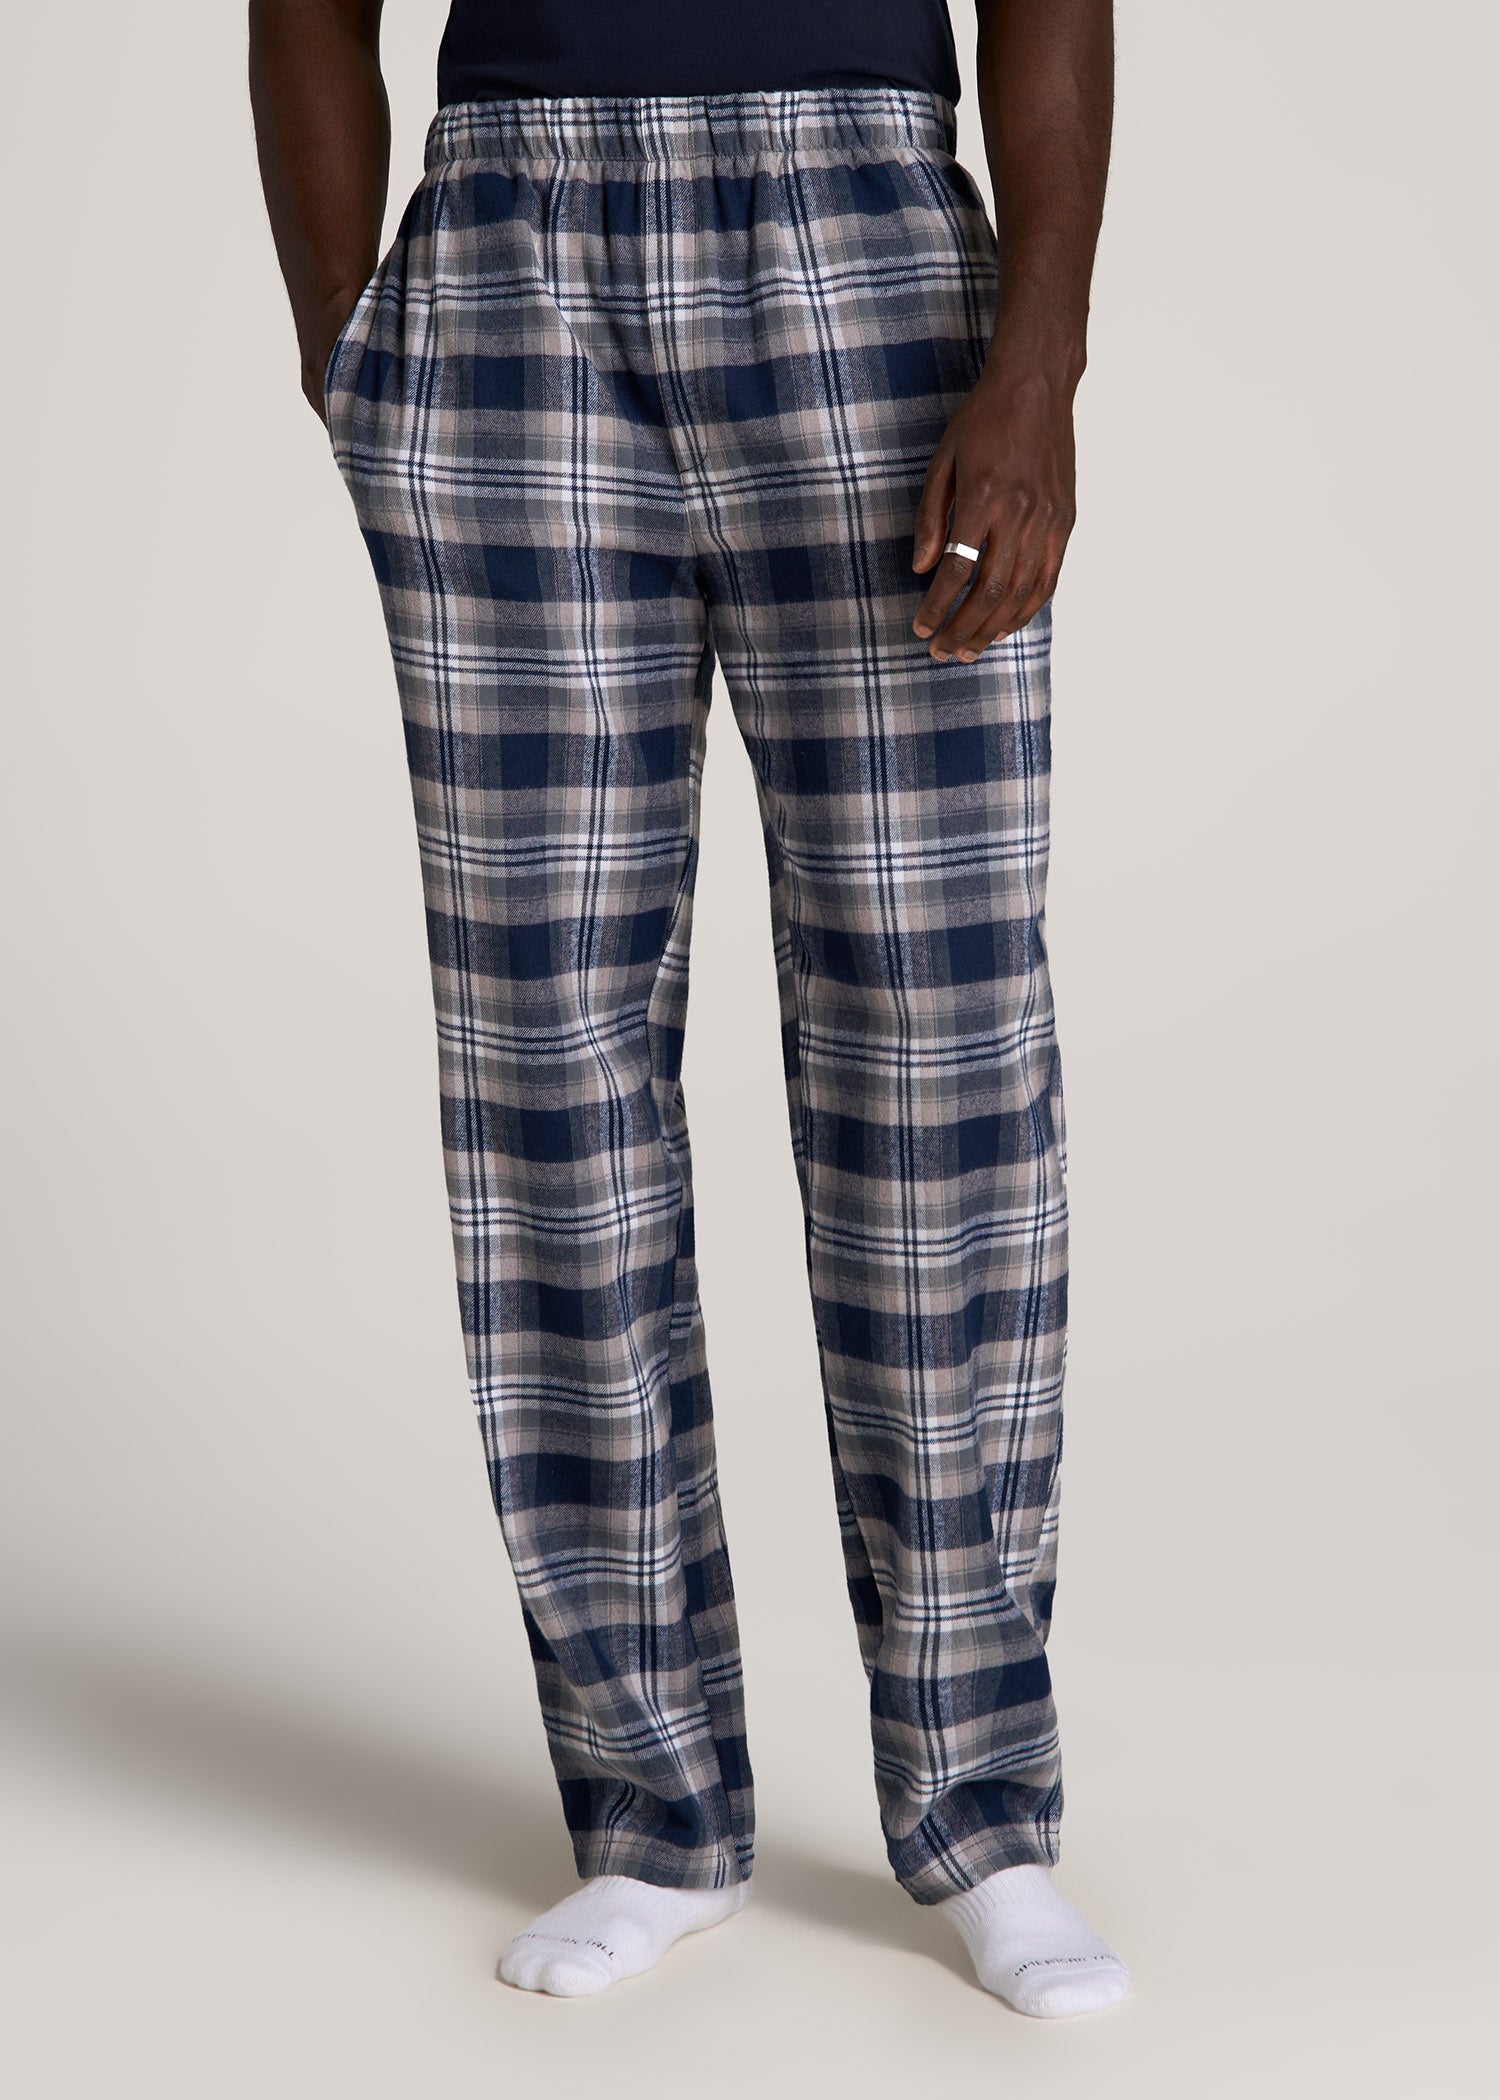 Men's Cotton Flannel Pajama Pants Plaid Jogger Lounge Pants with